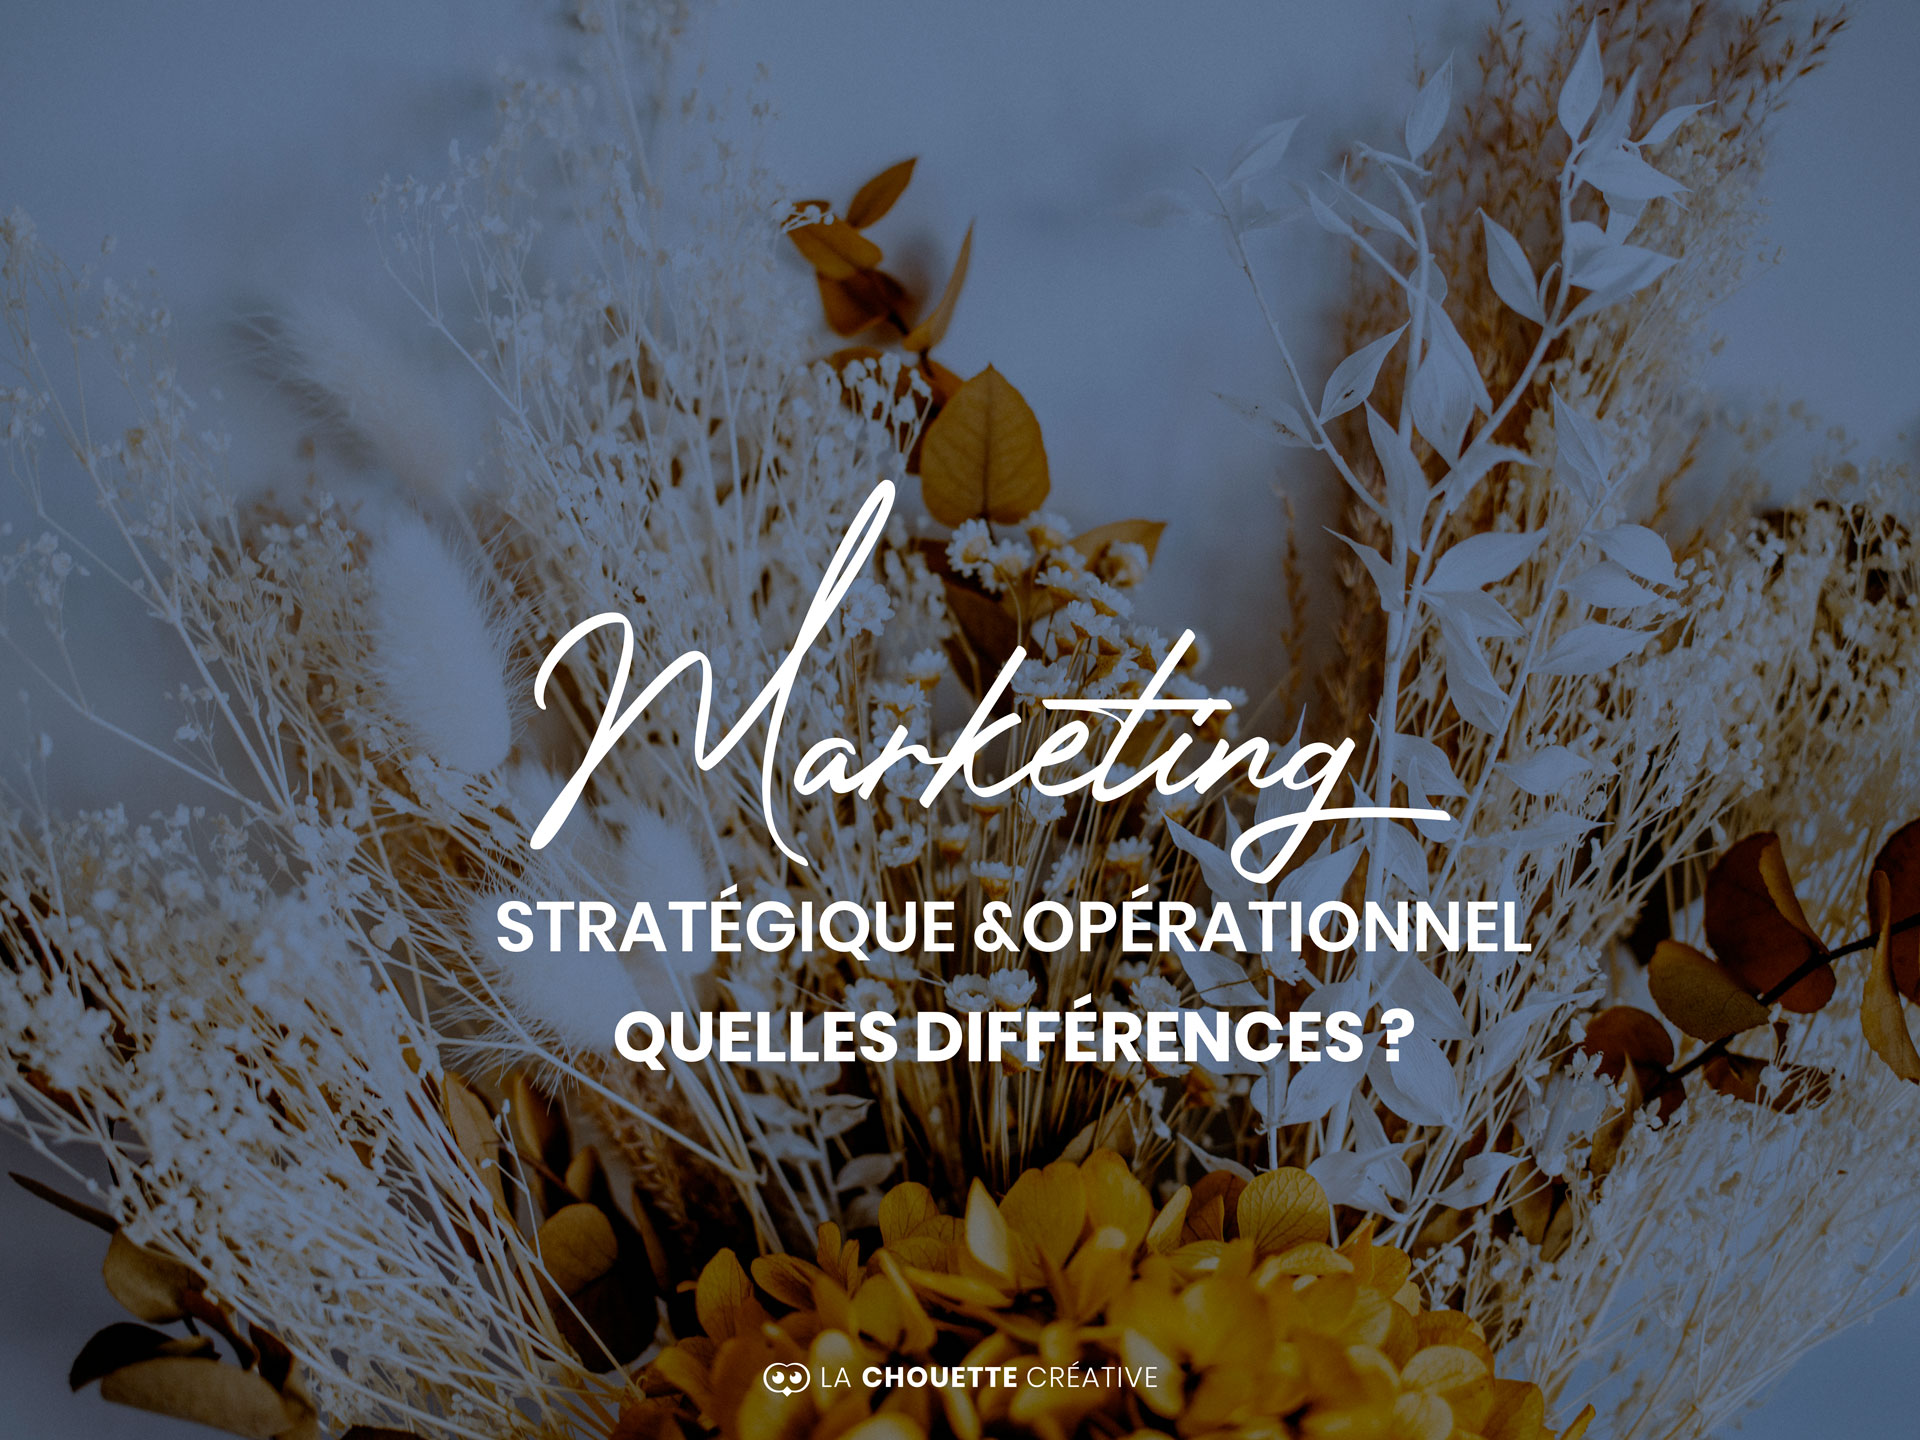 marketing stratégique & opérationnel quelles différences ?